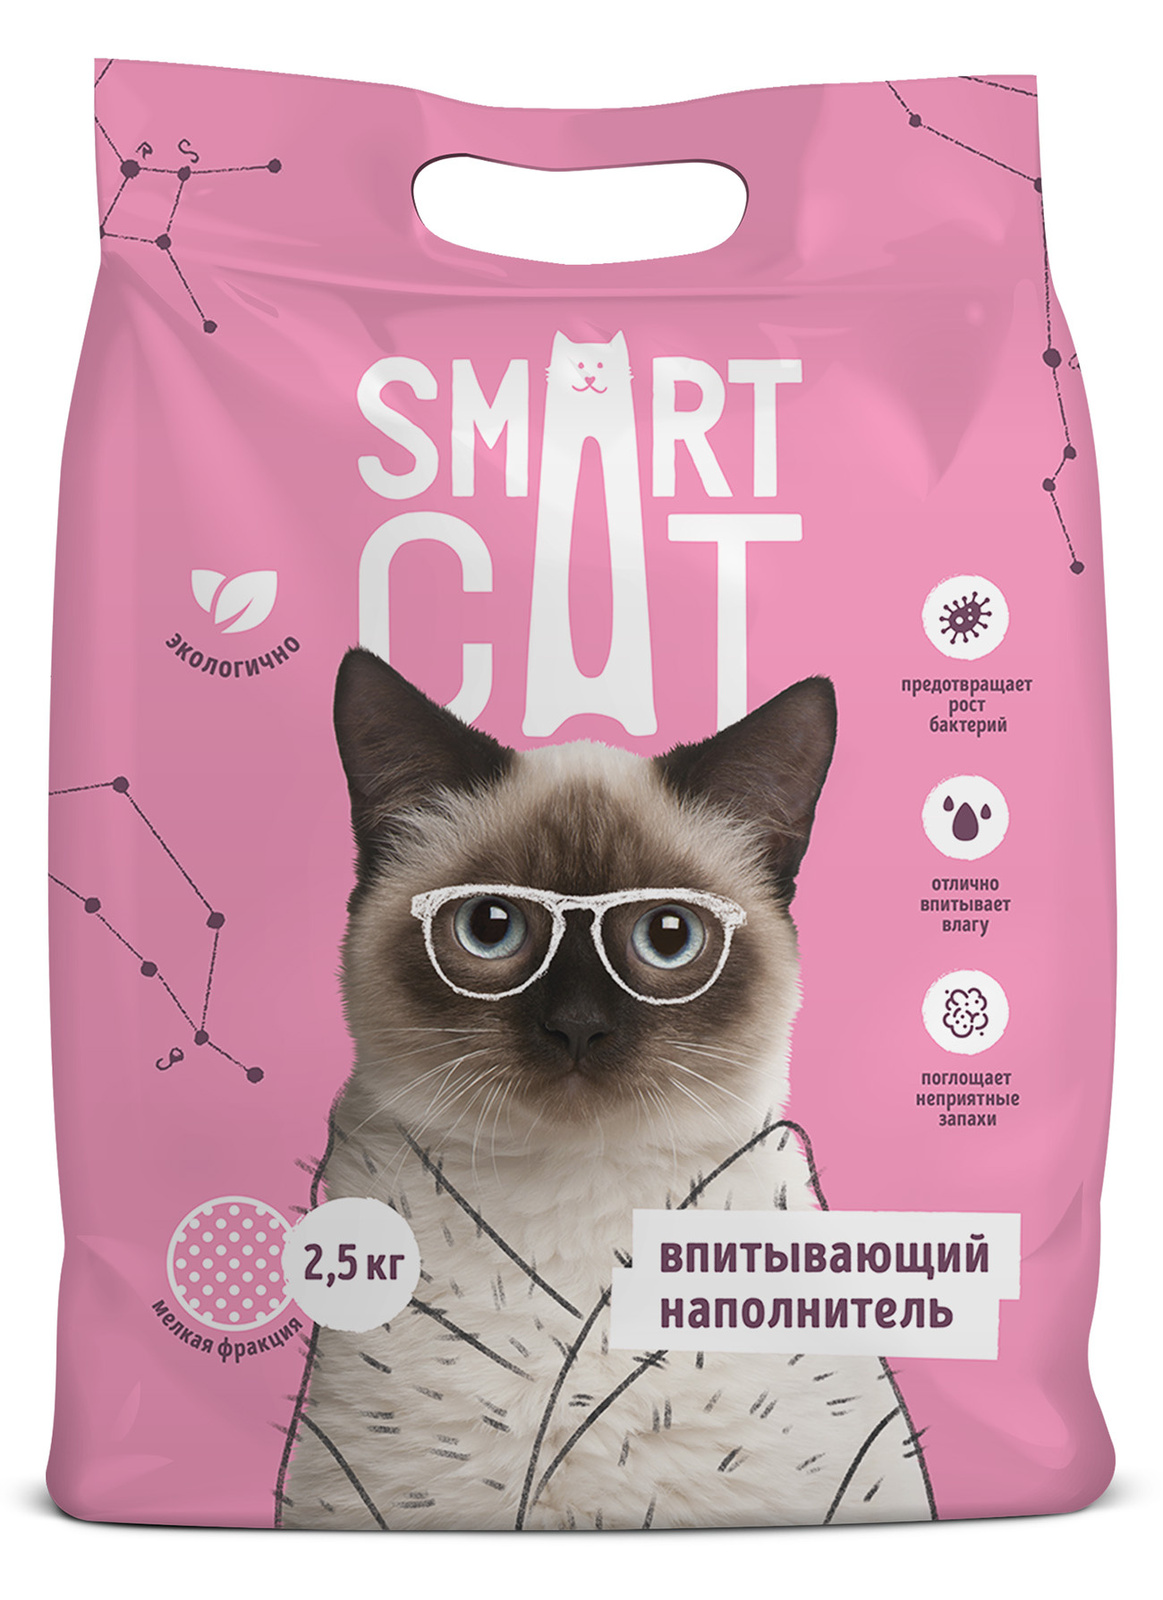 Smart Cat наполнитель Smart Cat наполнитель впитывающий наполнитель, мелкая фракция (5 кг) smart cat наполнитель впитывающий наполнитель 10л 5 кг средняя фракция 66ур25 5 кг 52862 1 шт